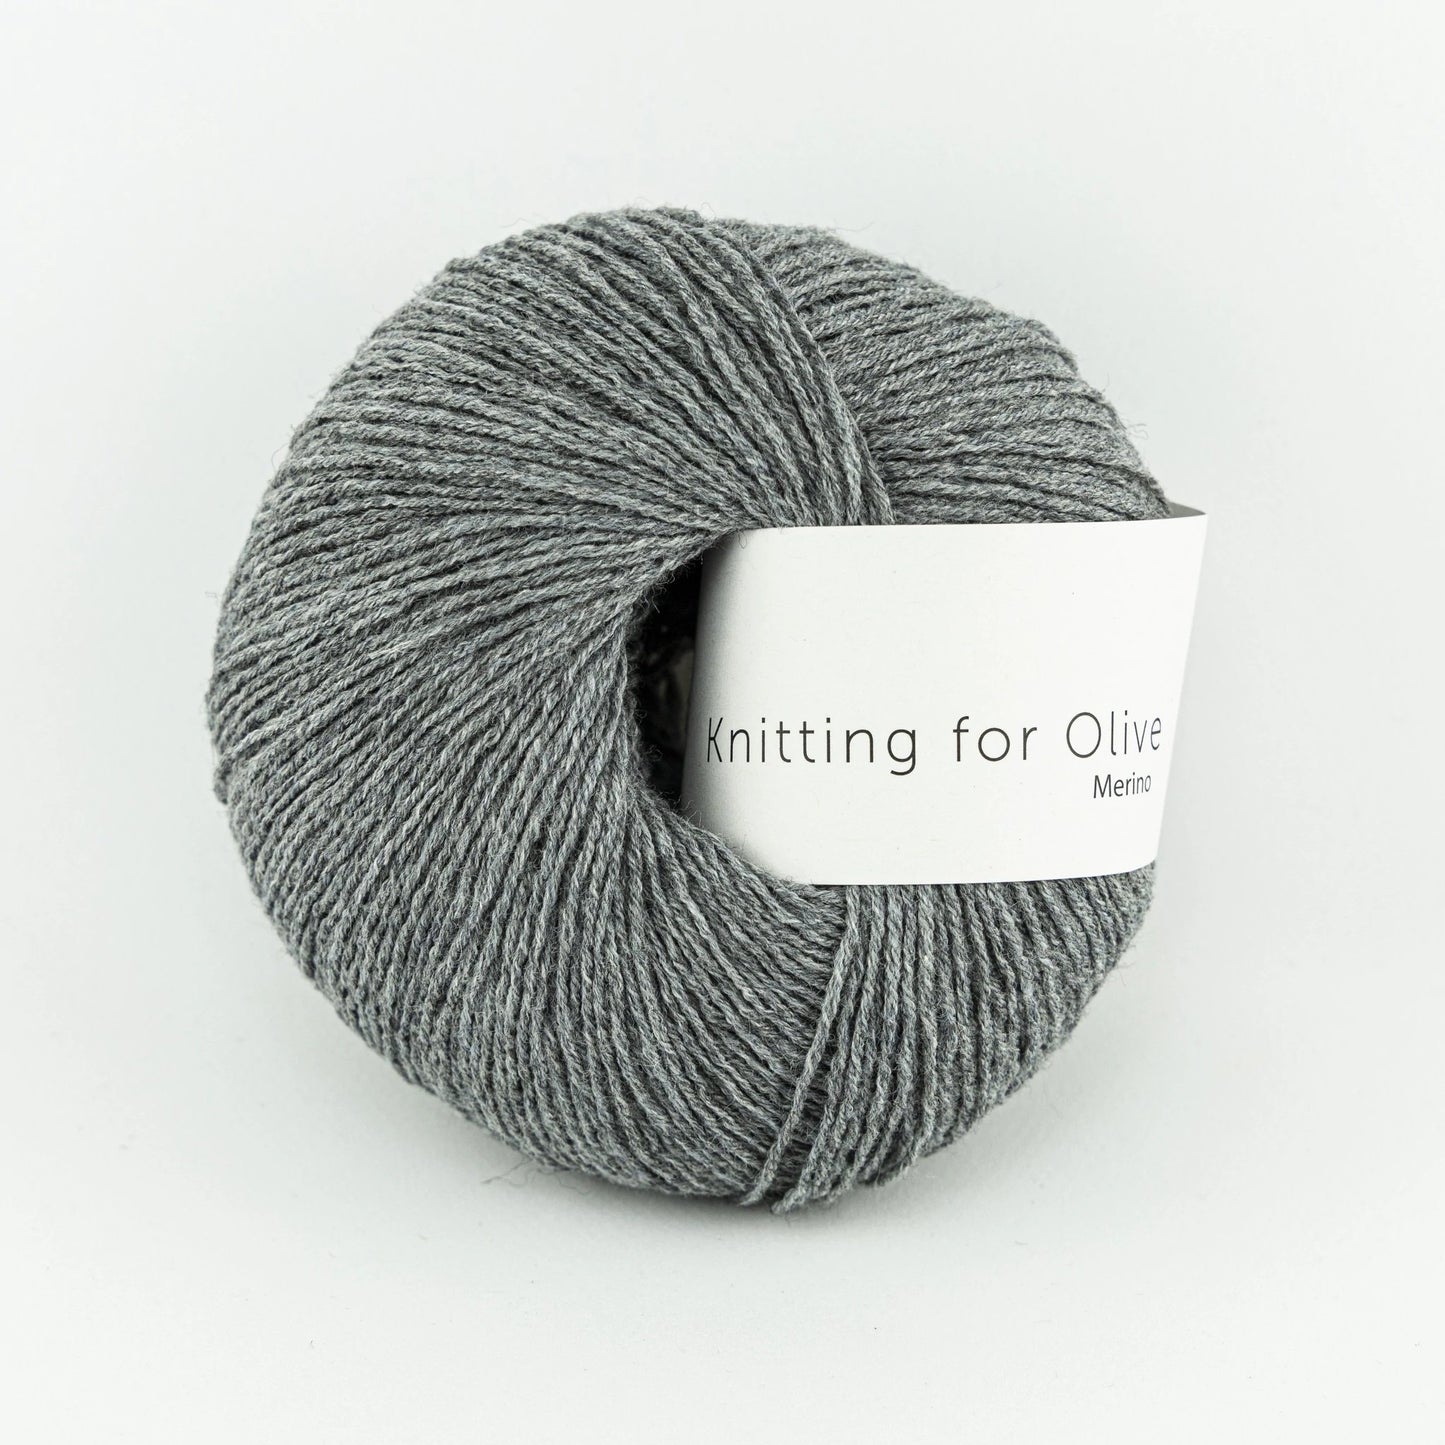 knitting for olive merino 50g granite grey